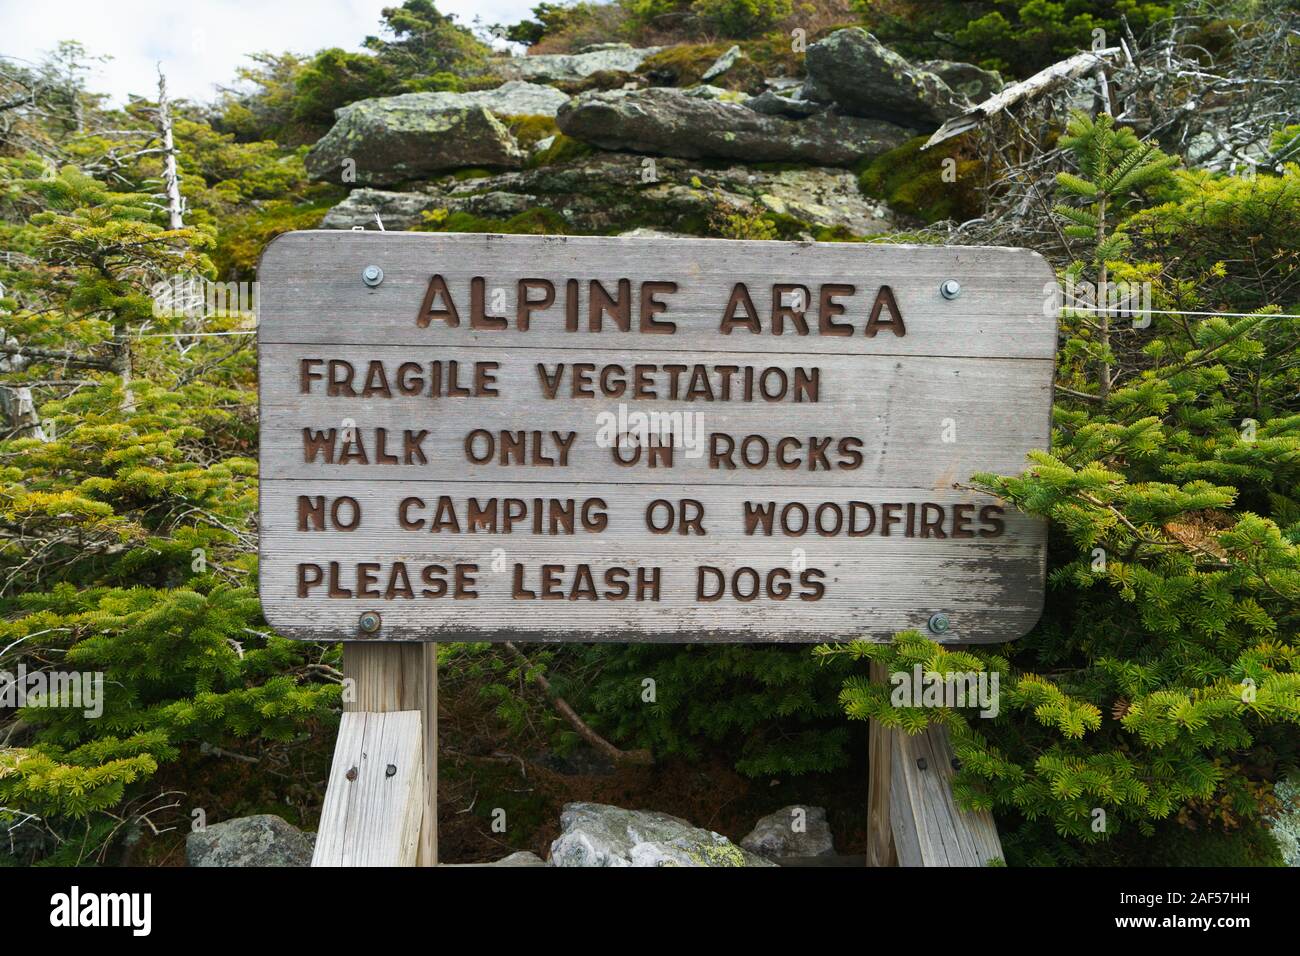 Inscrivez-vous pour les randonneurs d'avertissement restez sur les sentiers pour éviter d'endommager la végétation fragile, Camel's Hump, Vermont, USA. Banque D'Images